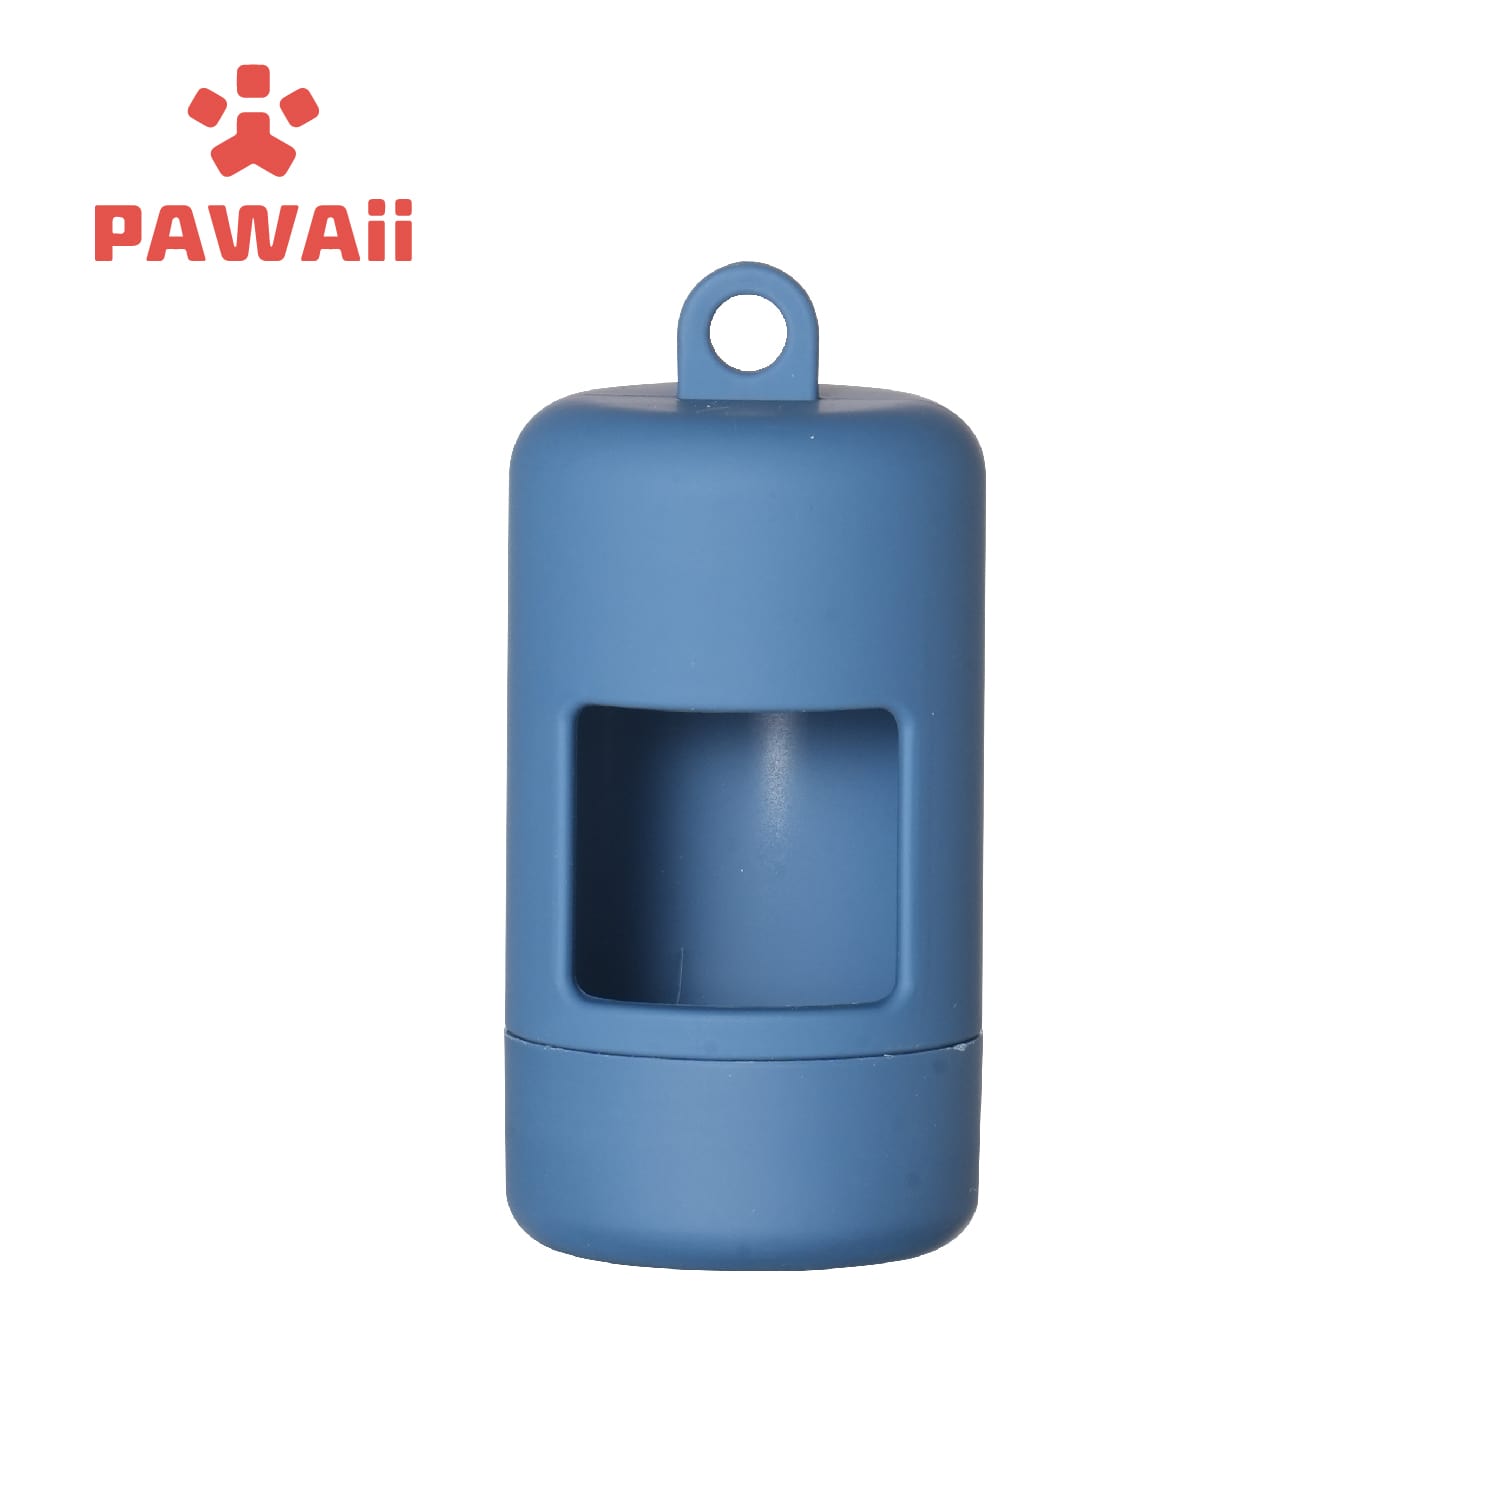 PAWAii Pet Poop Bag Holder - Metal